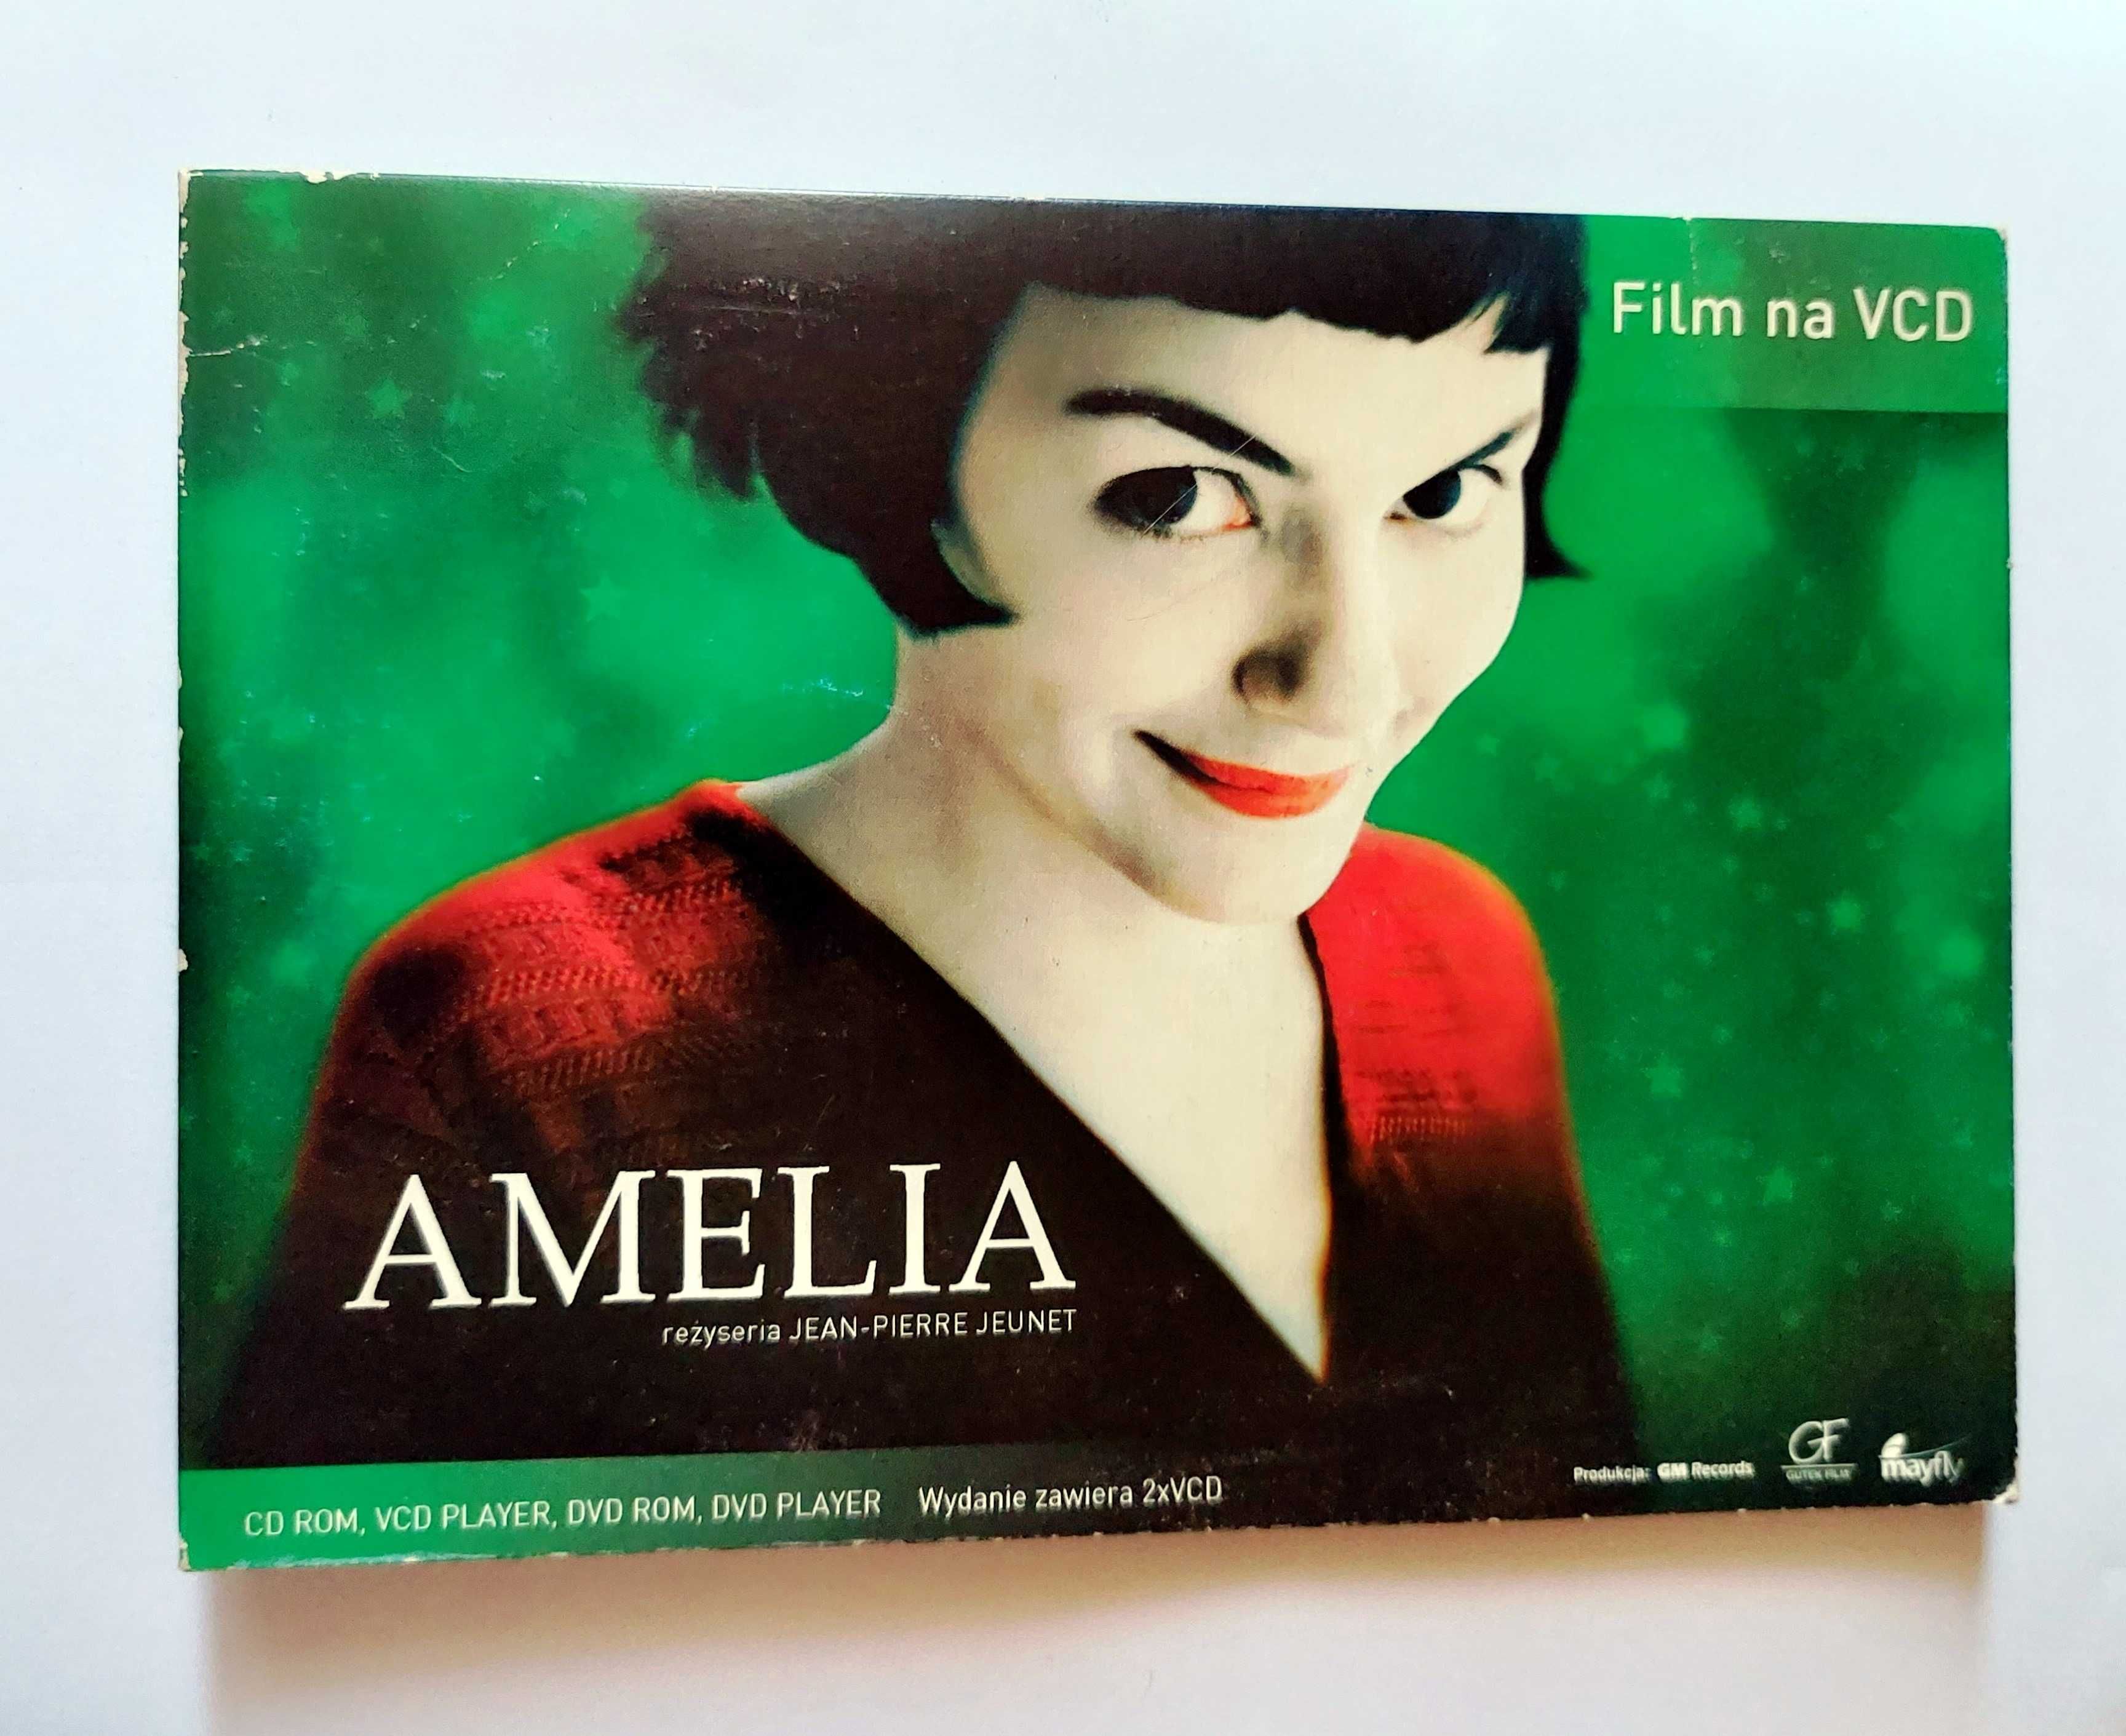 AMELIA | fajny film po polsku na VCD